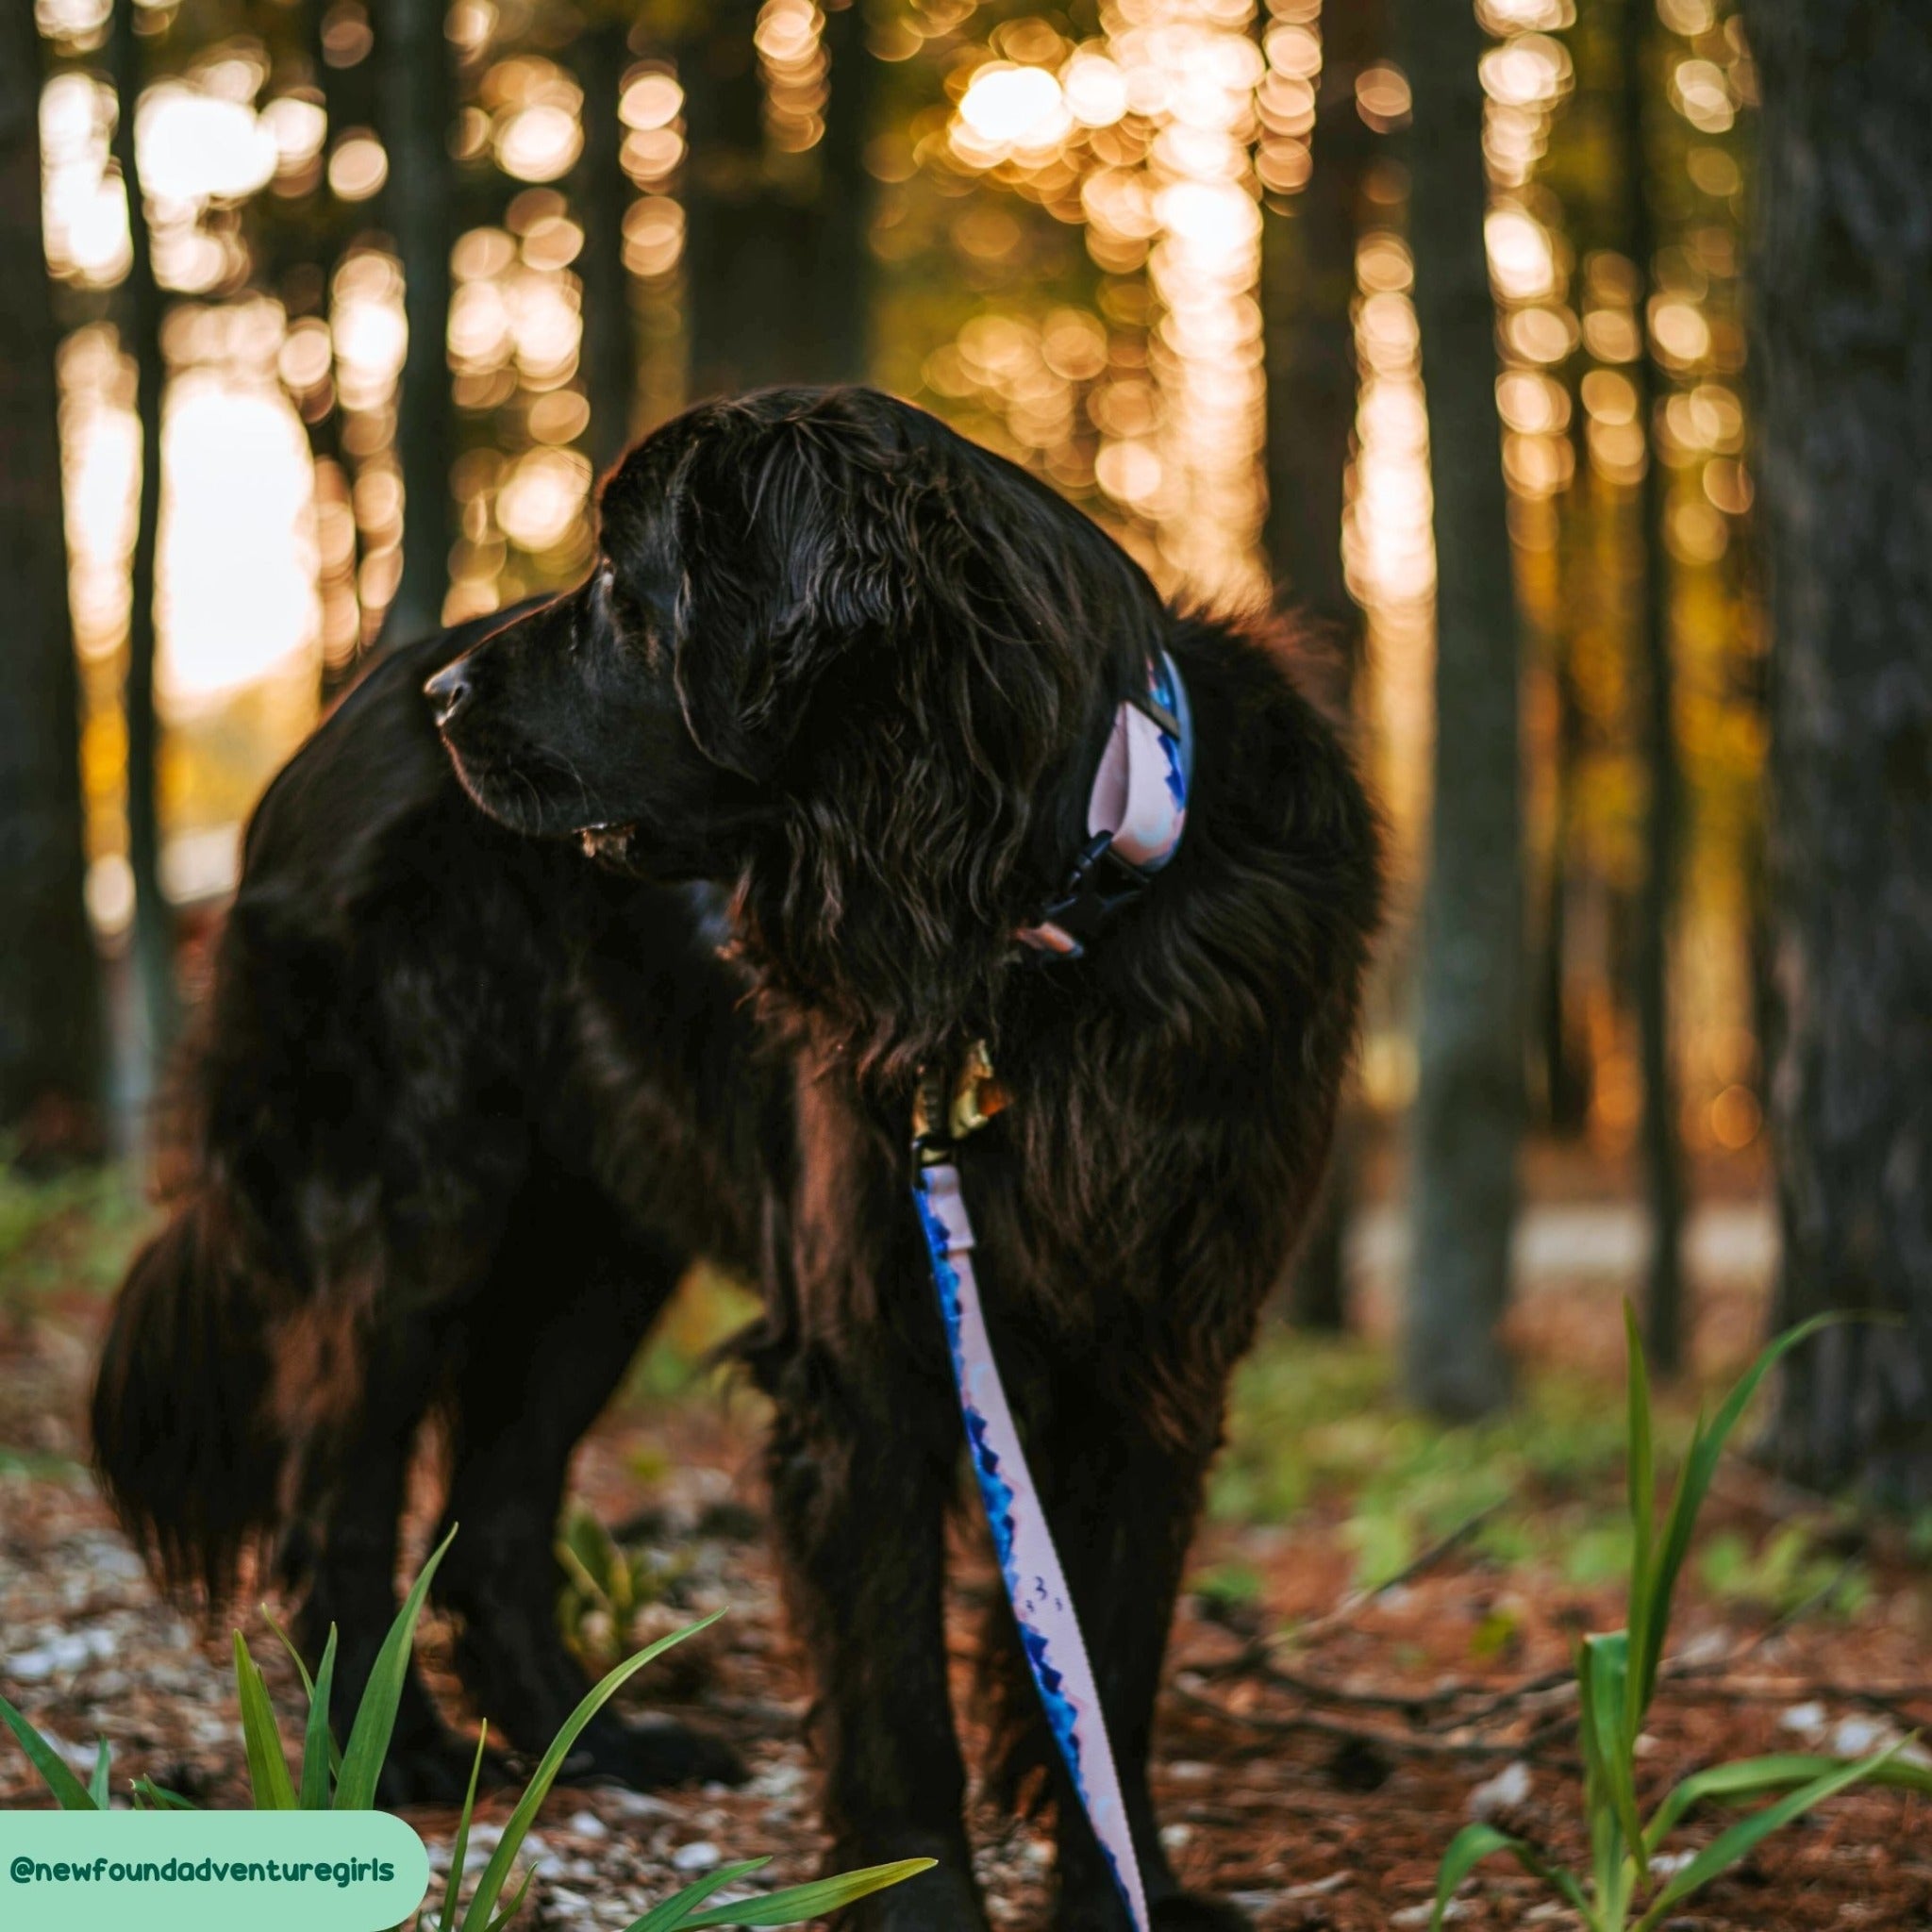 Mt. Millicent Explorer Dog Walking Belt Bag – Designs By Wildside